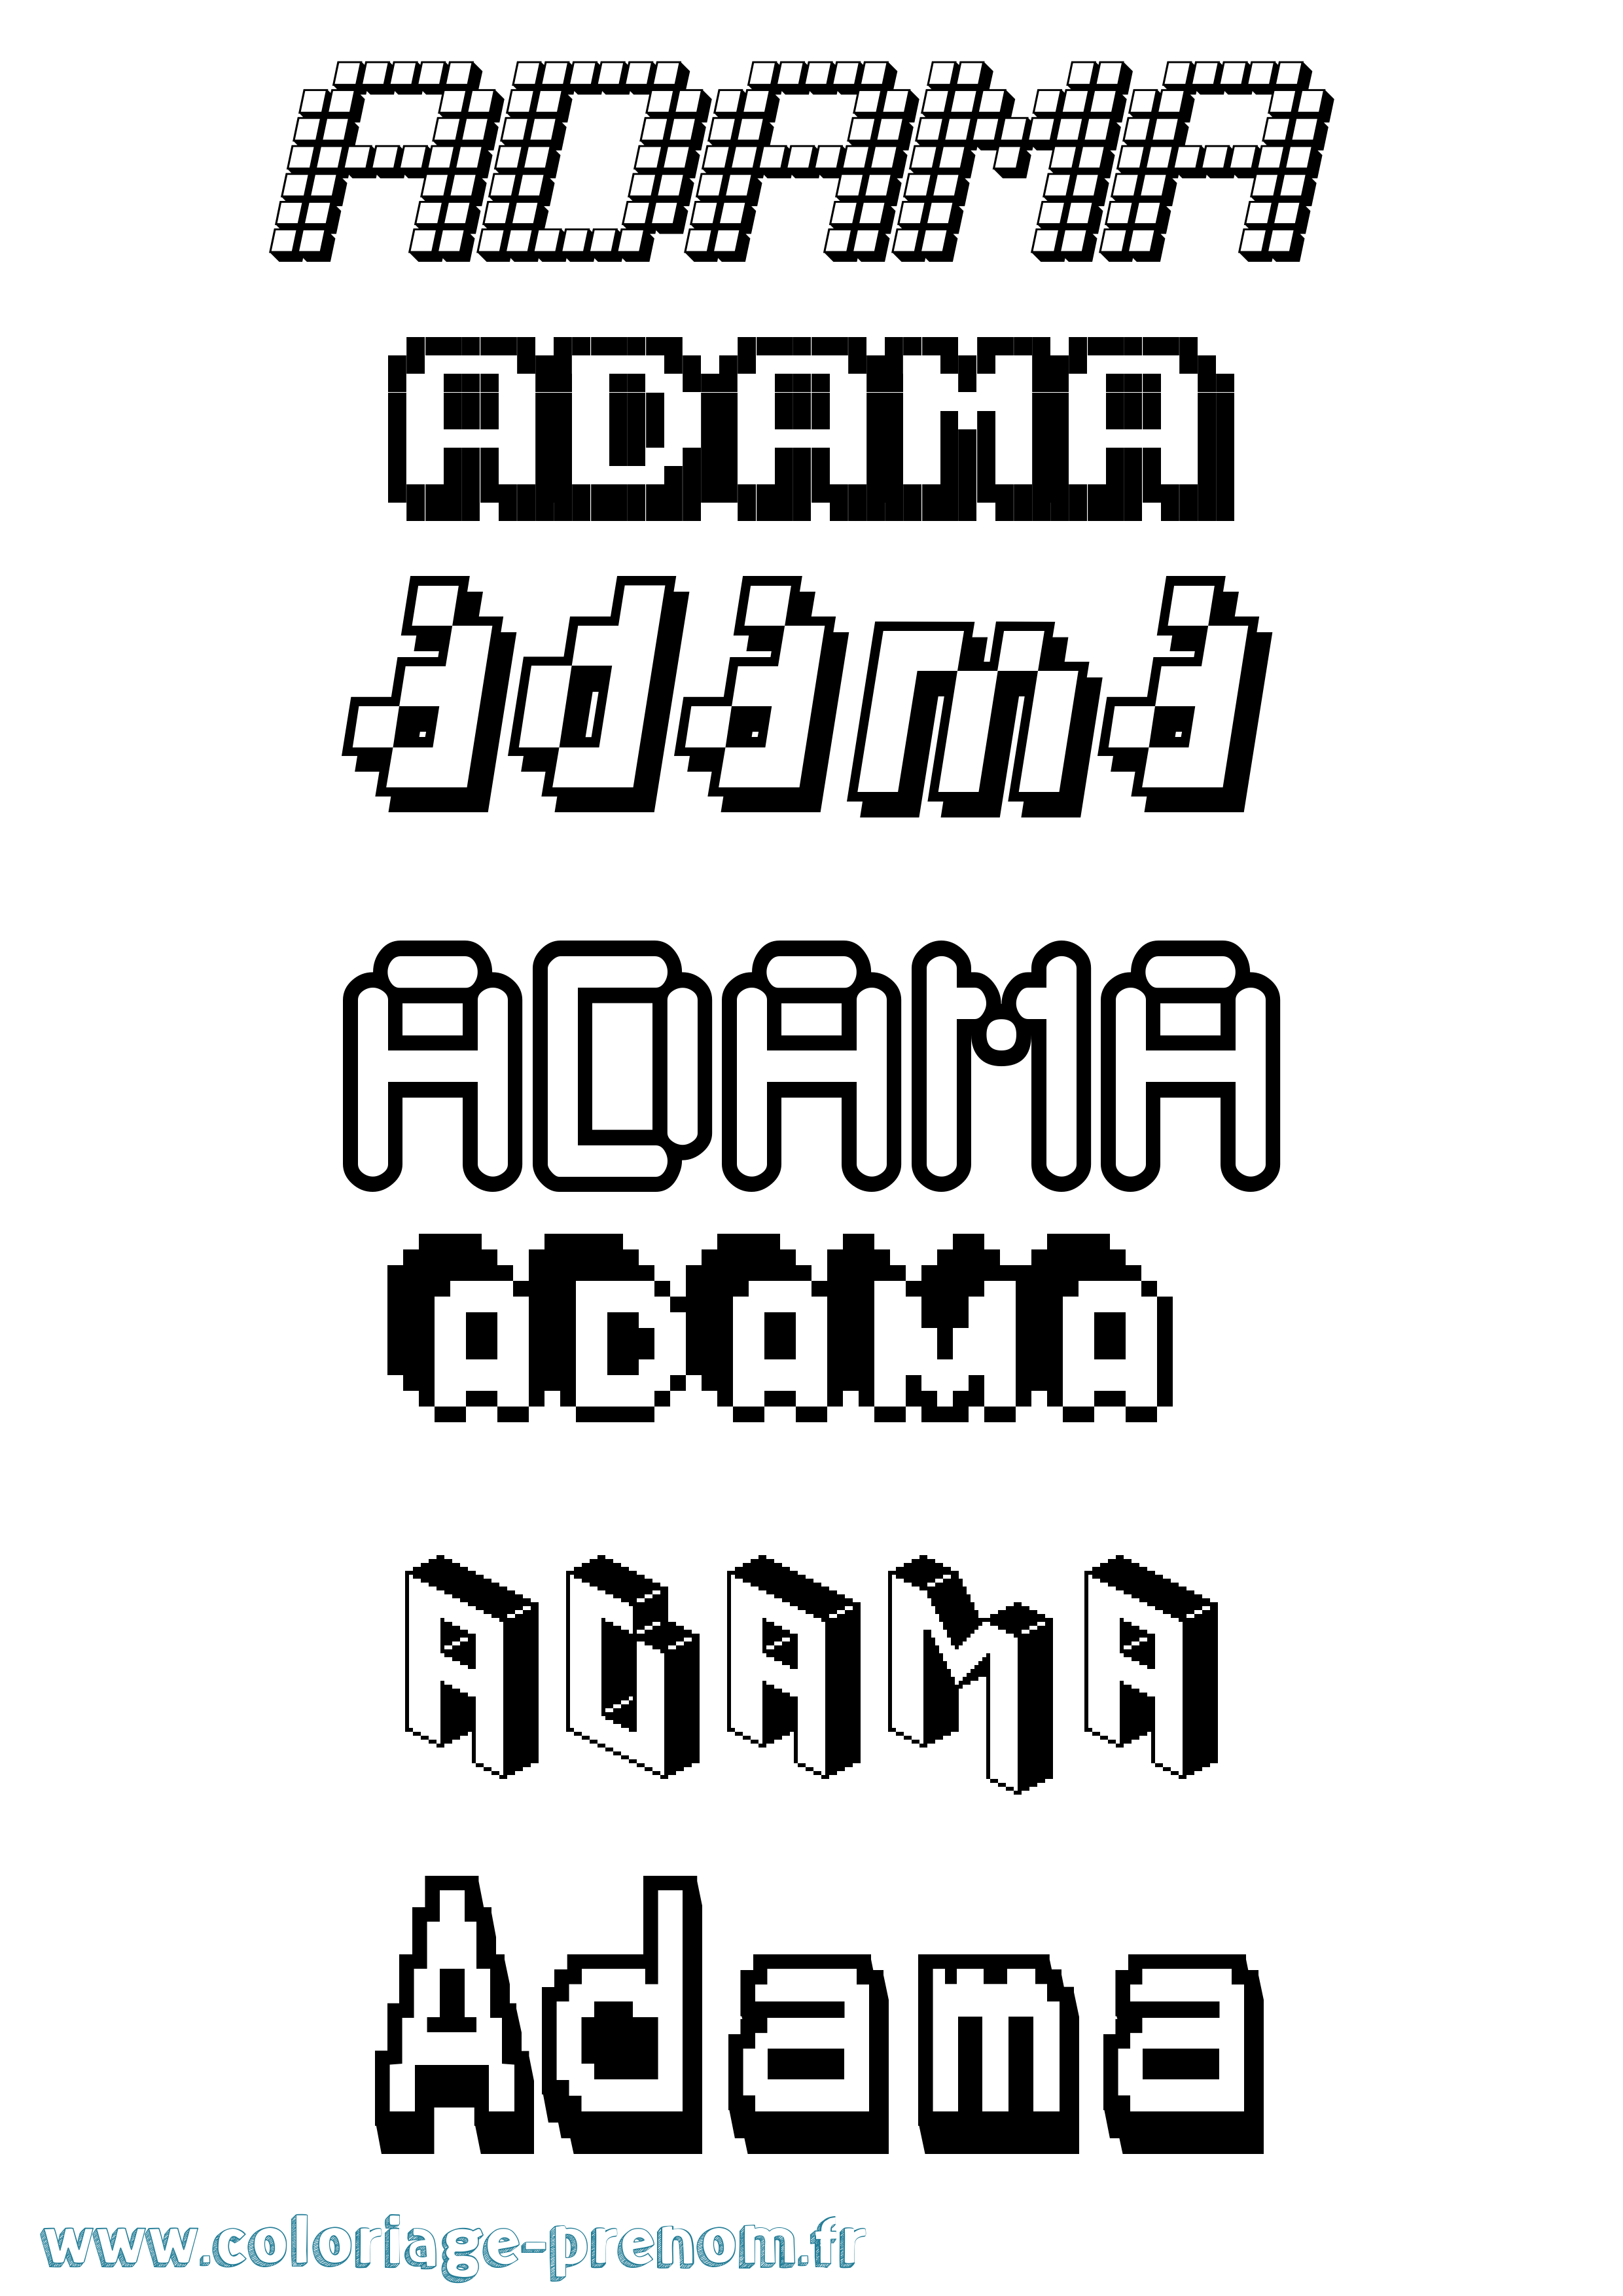 Coloriage prénom Adama Pixel